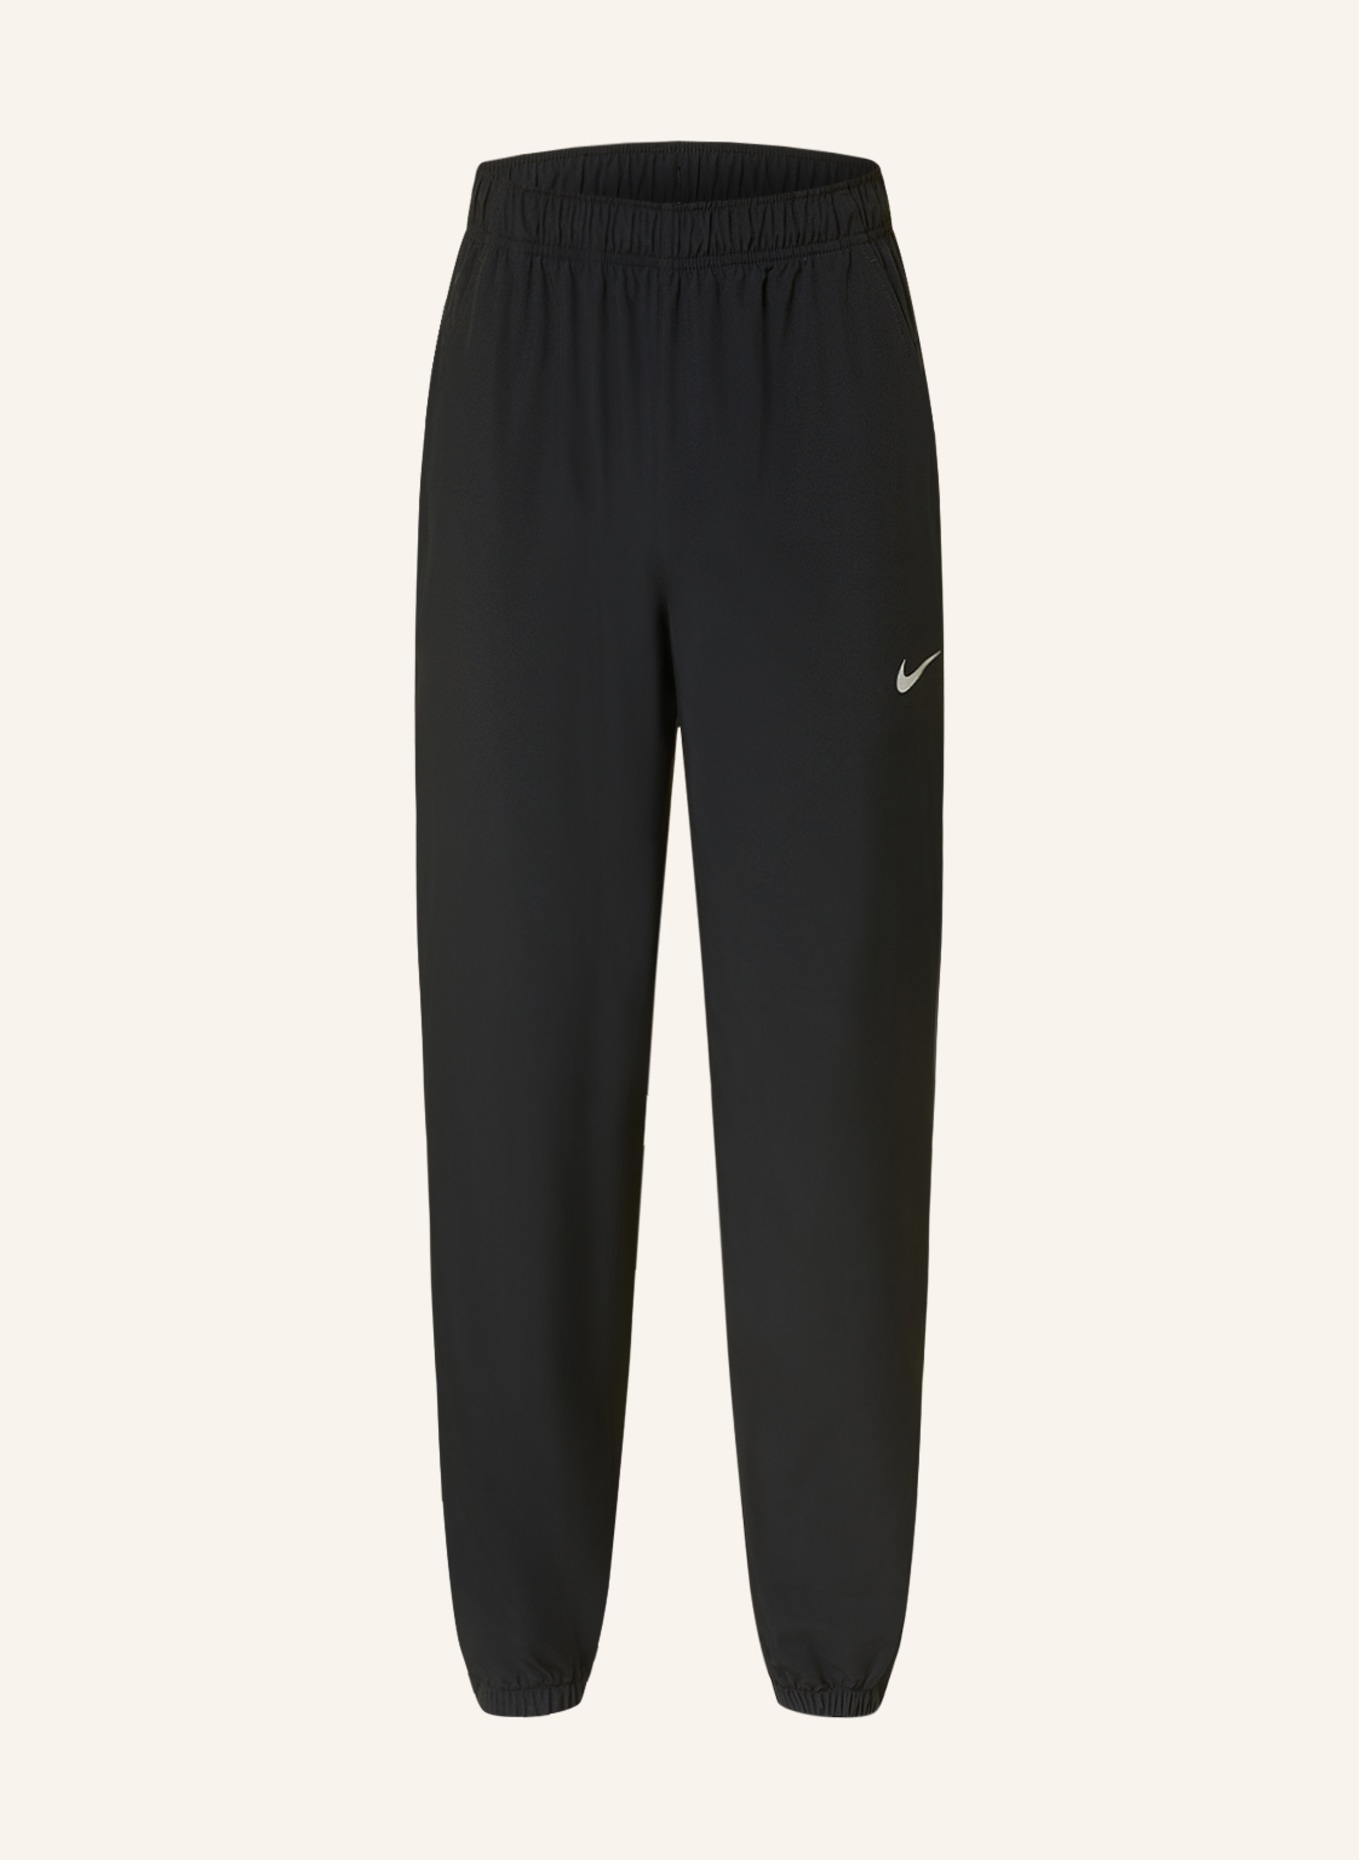 Nike Dri-FIT Boys Woven Training Pants